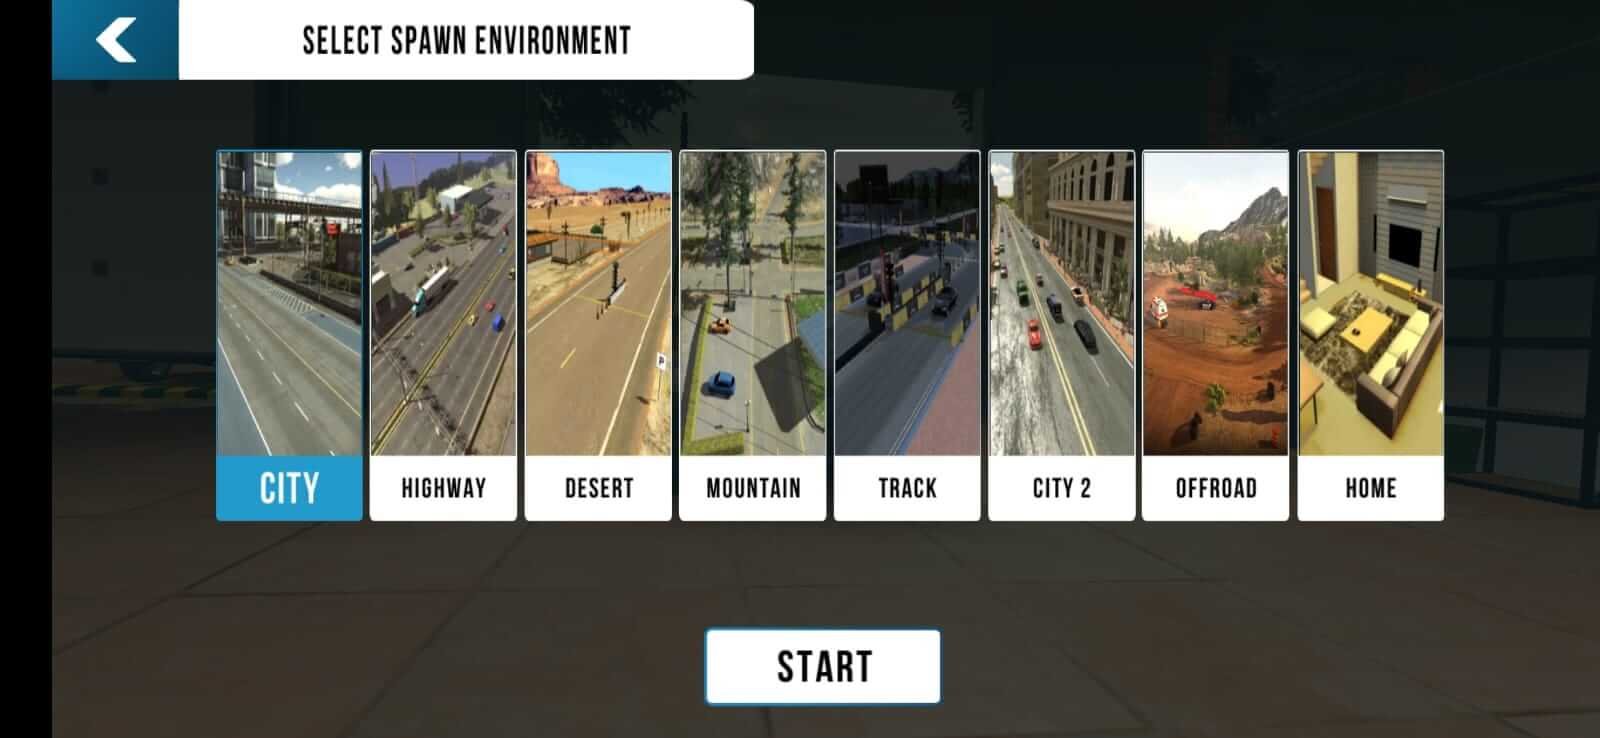 Car Parking Multiplayer Mod, v4.8.12.6, Todos Os Carros Desbloqueados & Dinheiro  Infinito